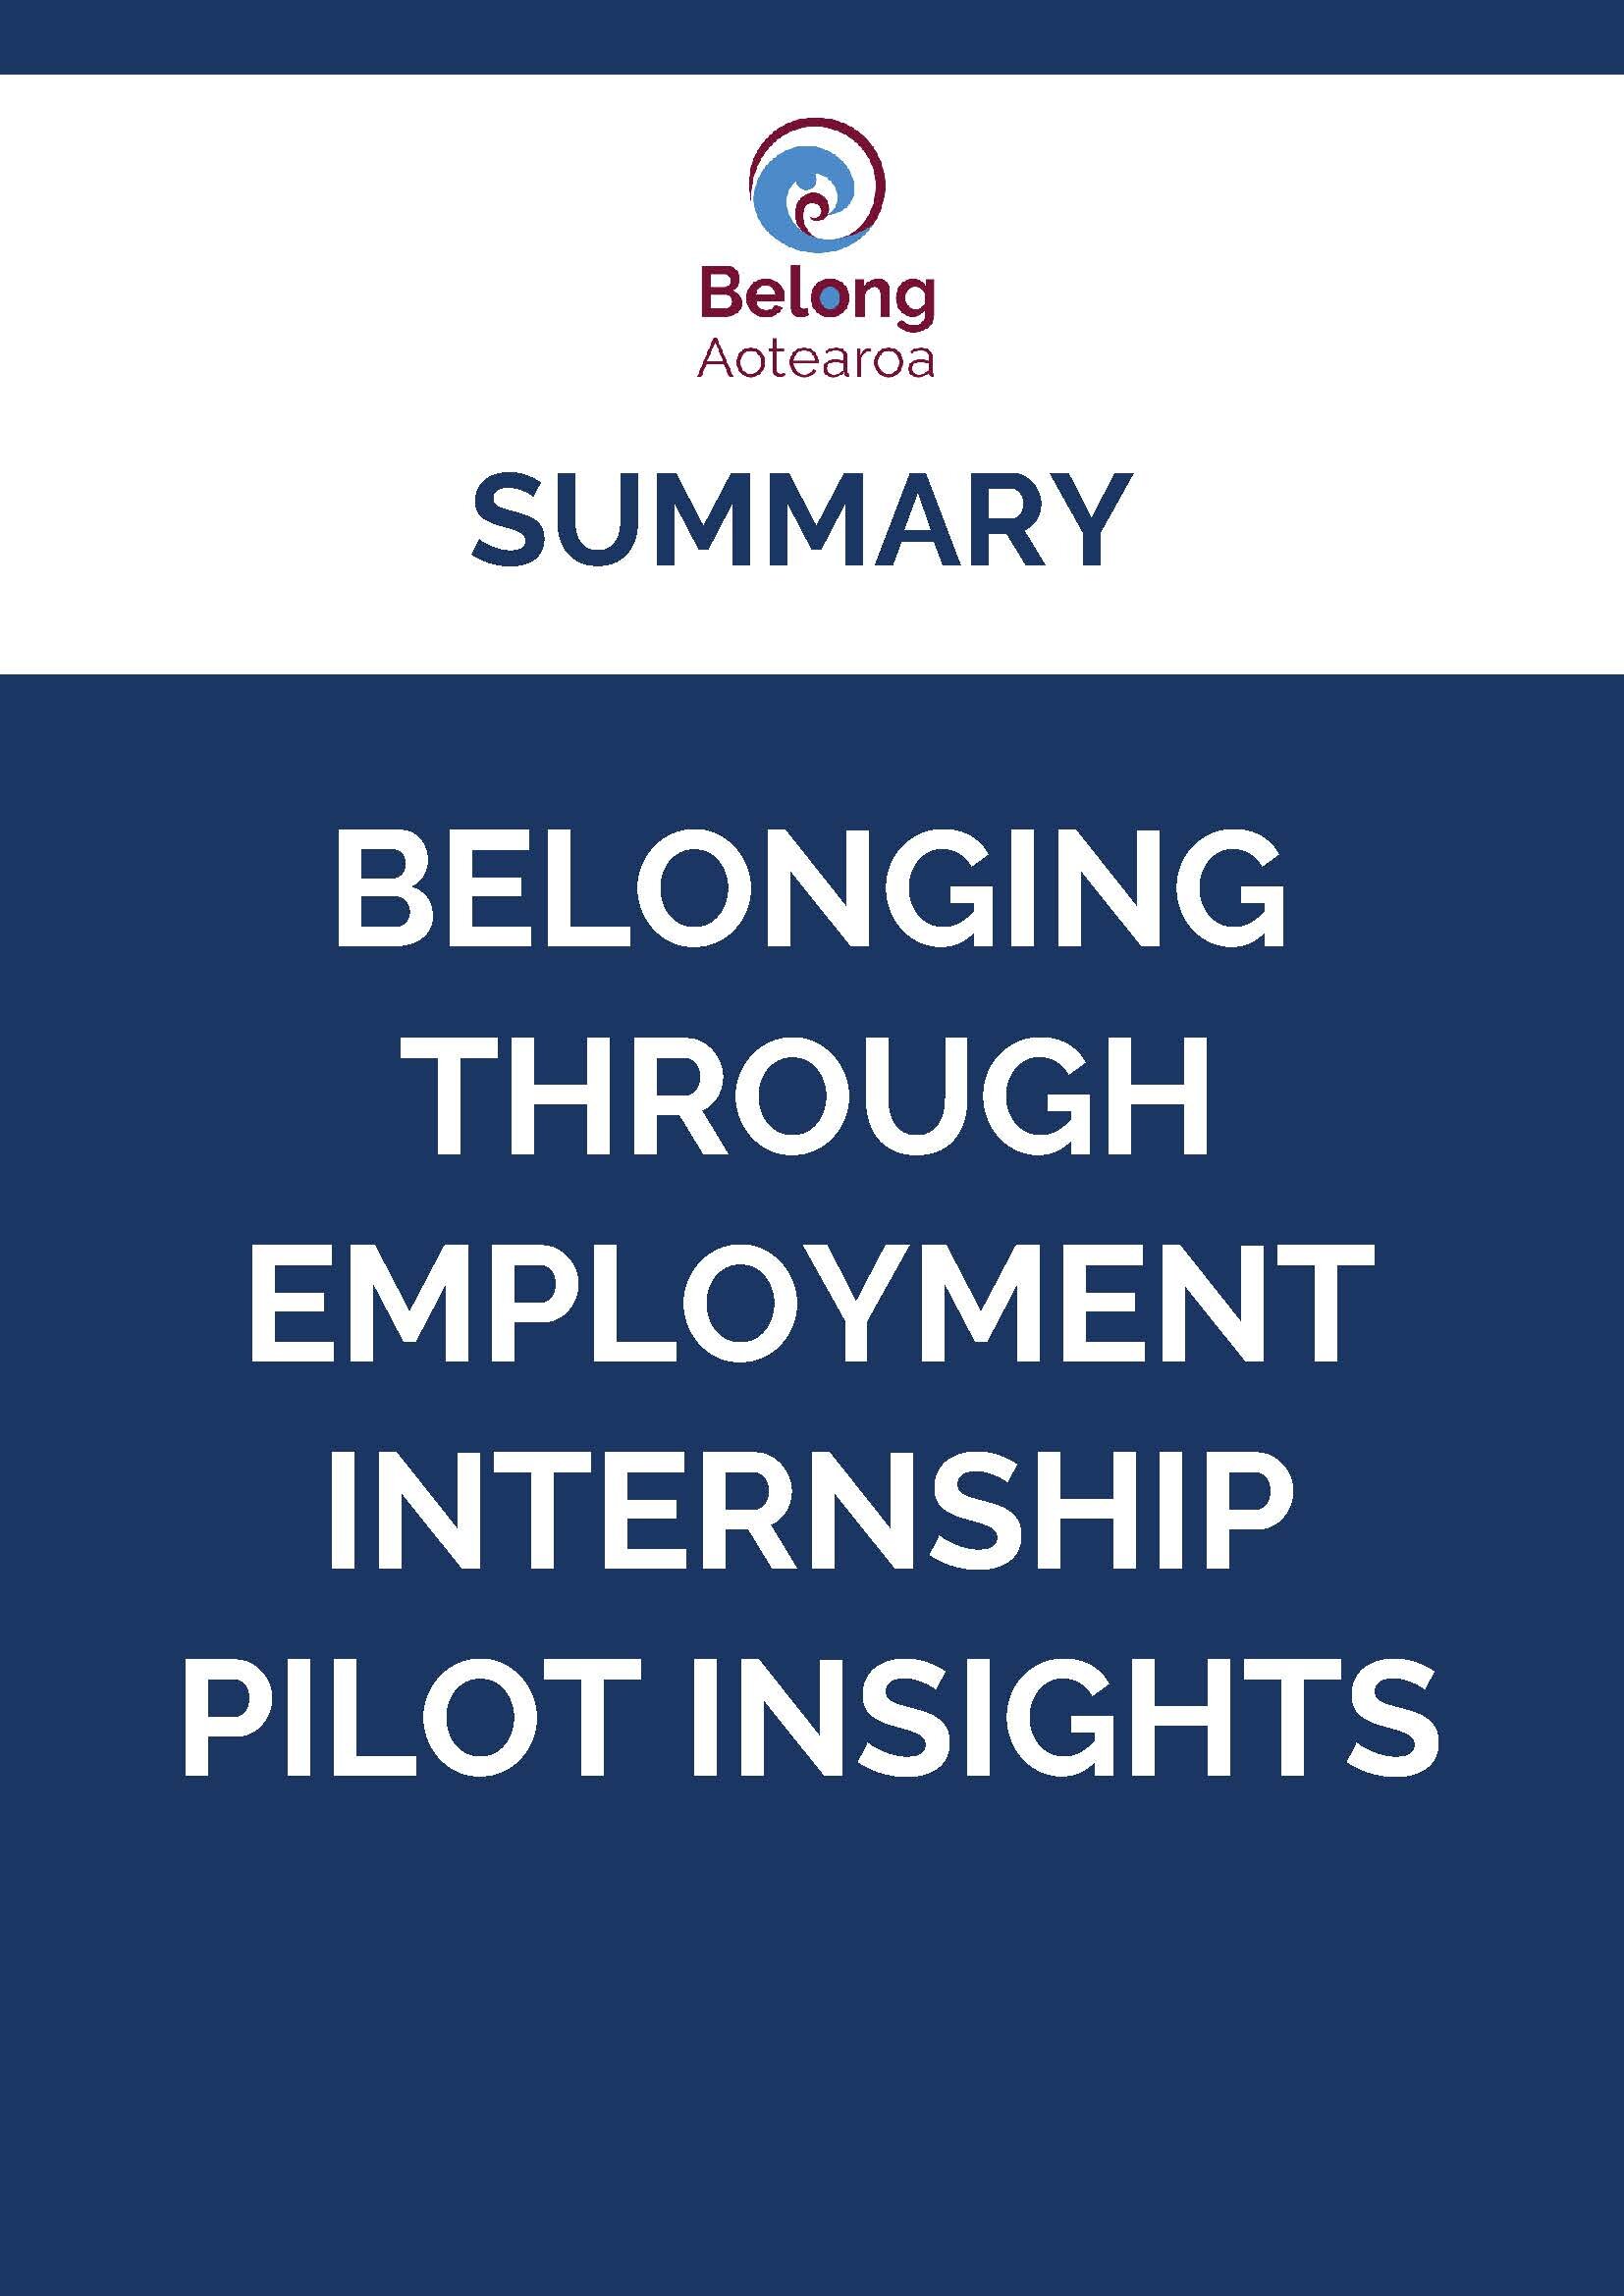 Belonging Internship Pilot Internships Summary.jpg